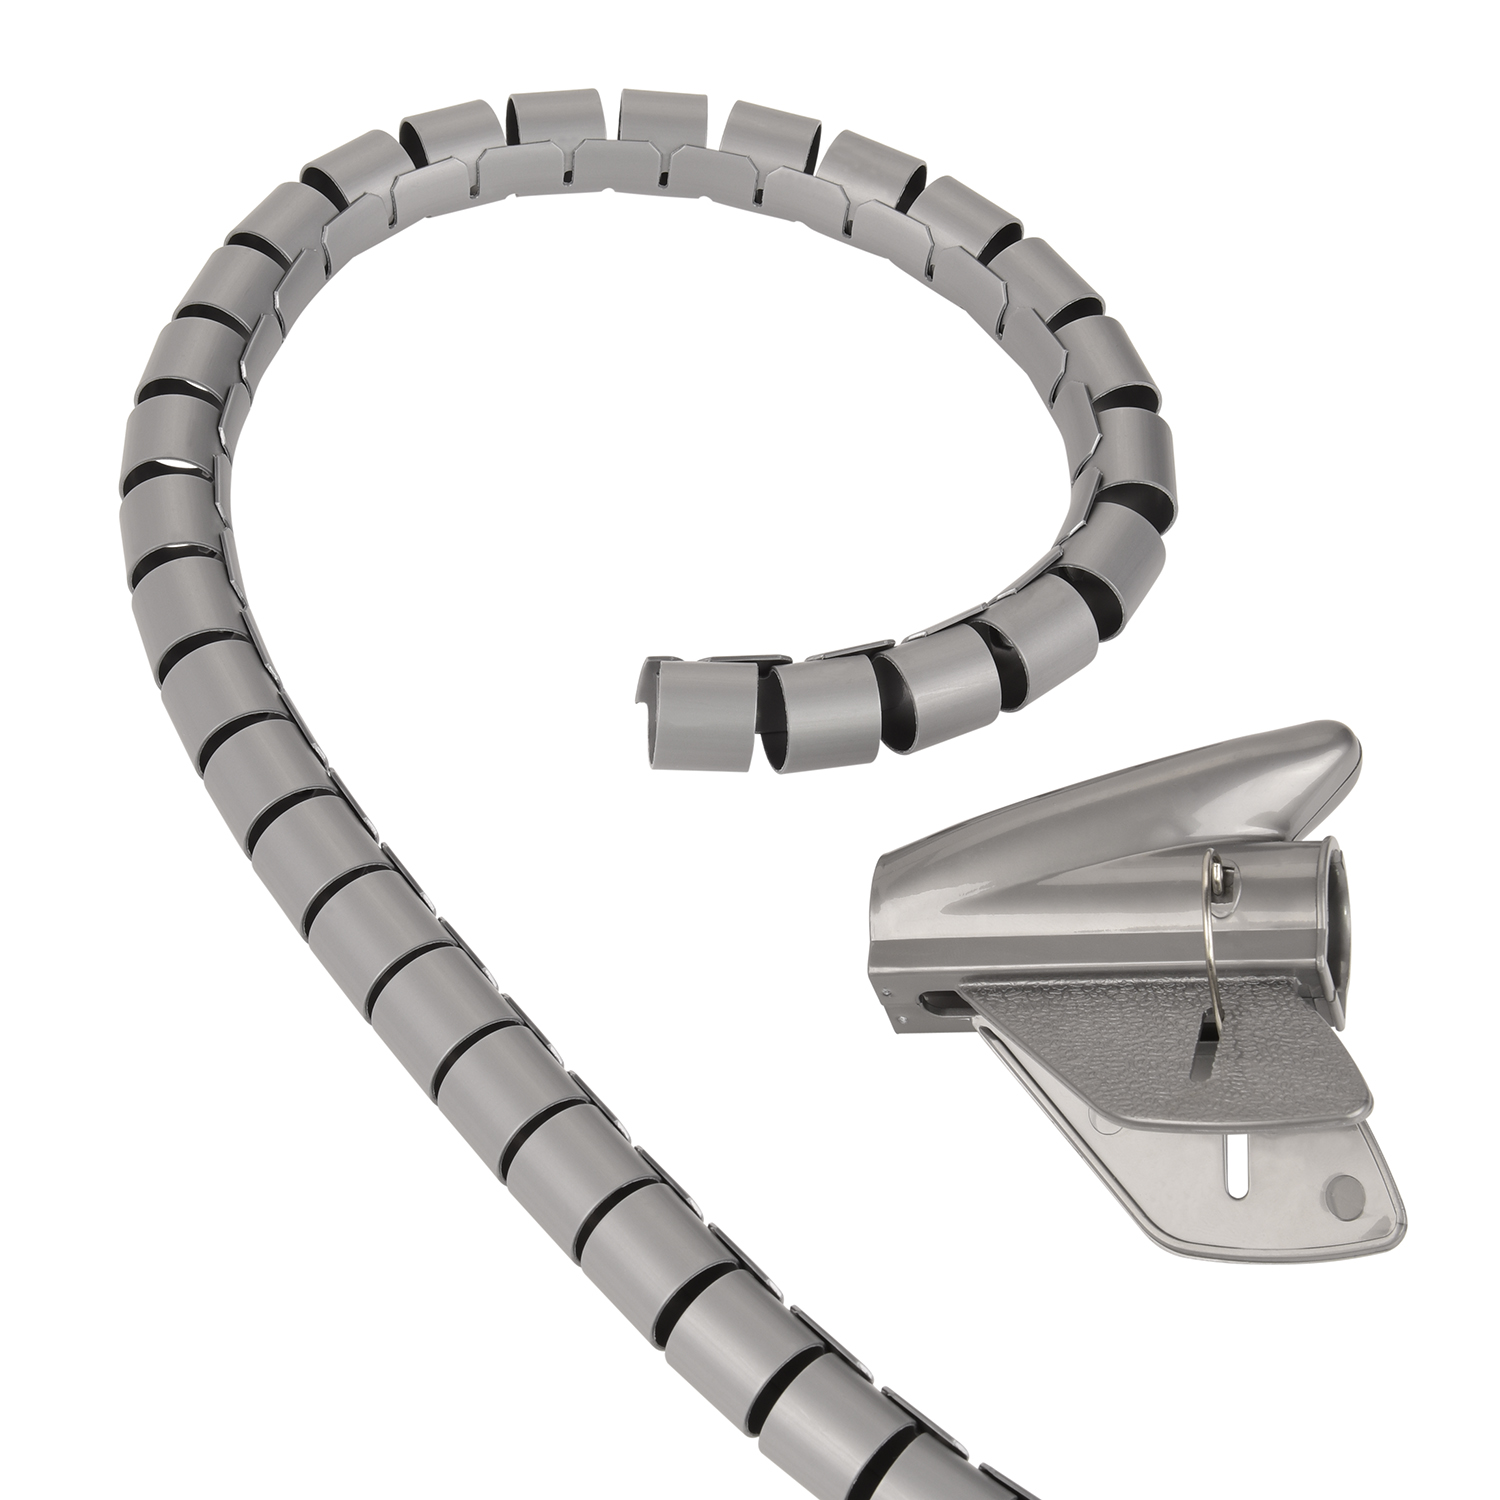 TPFNET Premium Spiral-Kabelschlauch 20mm, mit Kabelschlauch, Silber Silber, Einfädelhilfe, 1,5m